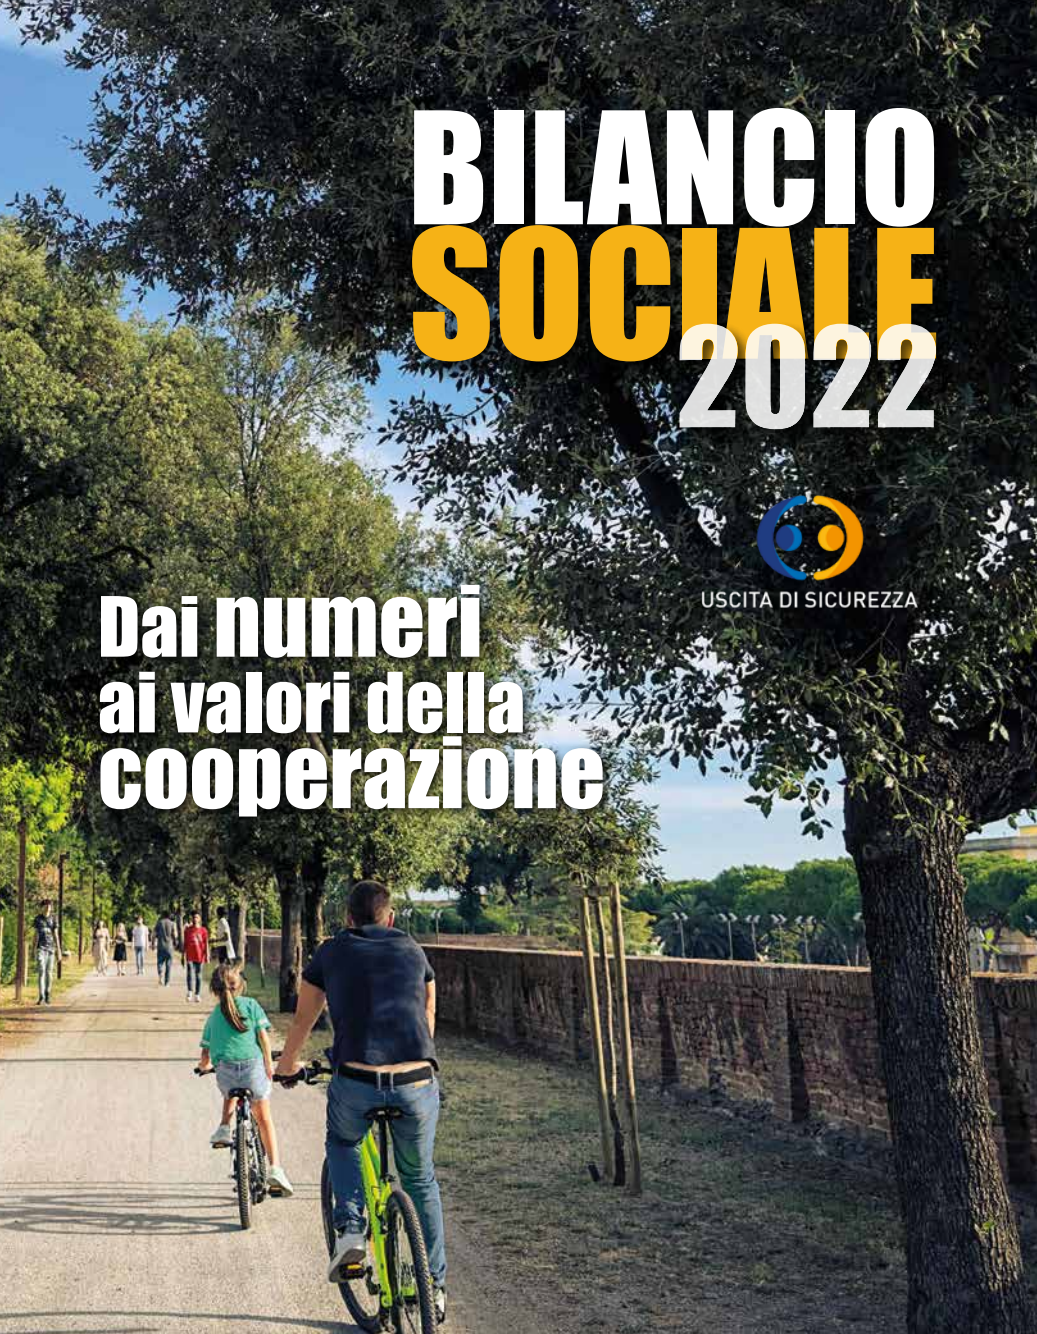 Bilancio sociale 2022: al centro i valori della cooperazione